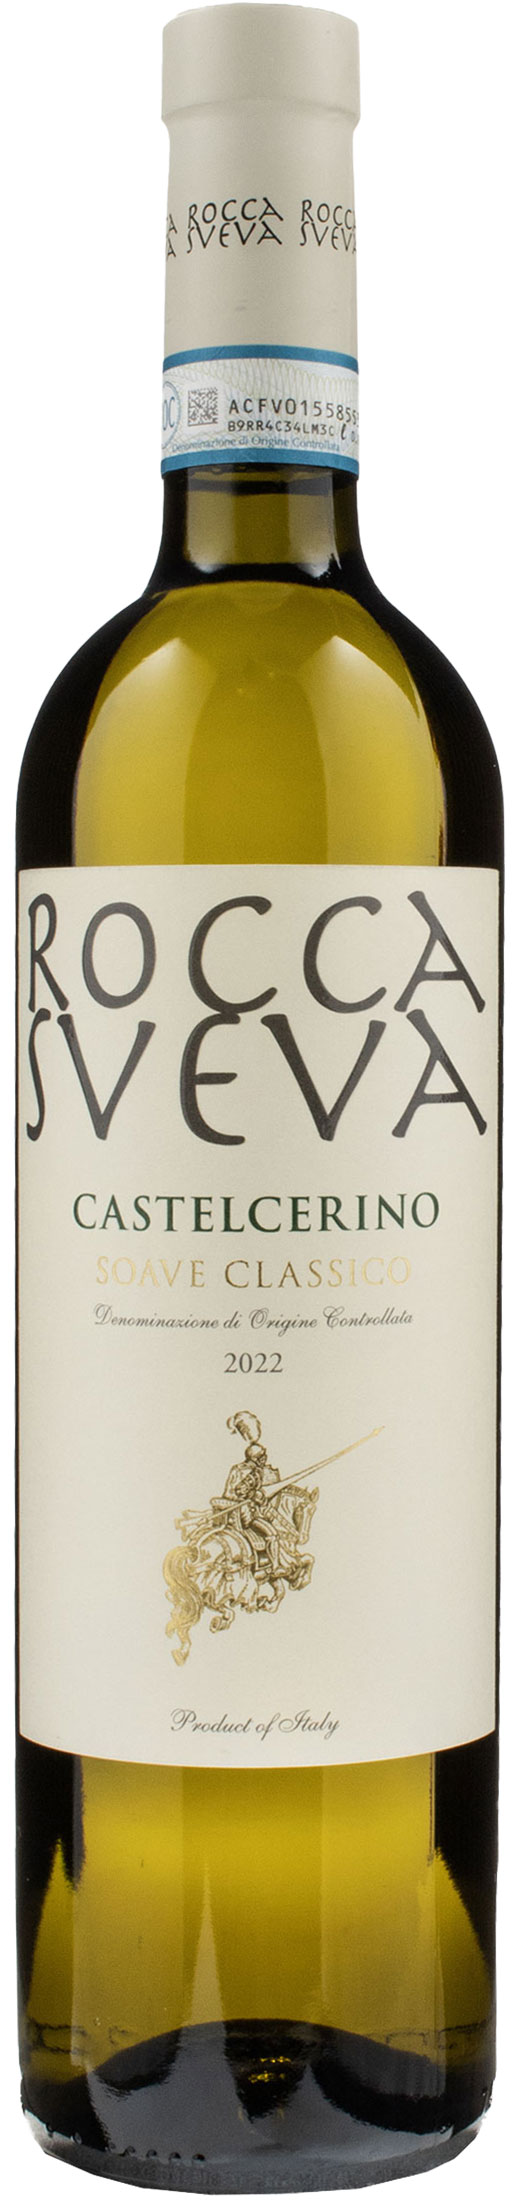 Rocca Sveva Soave Classico Castelcerino 2022